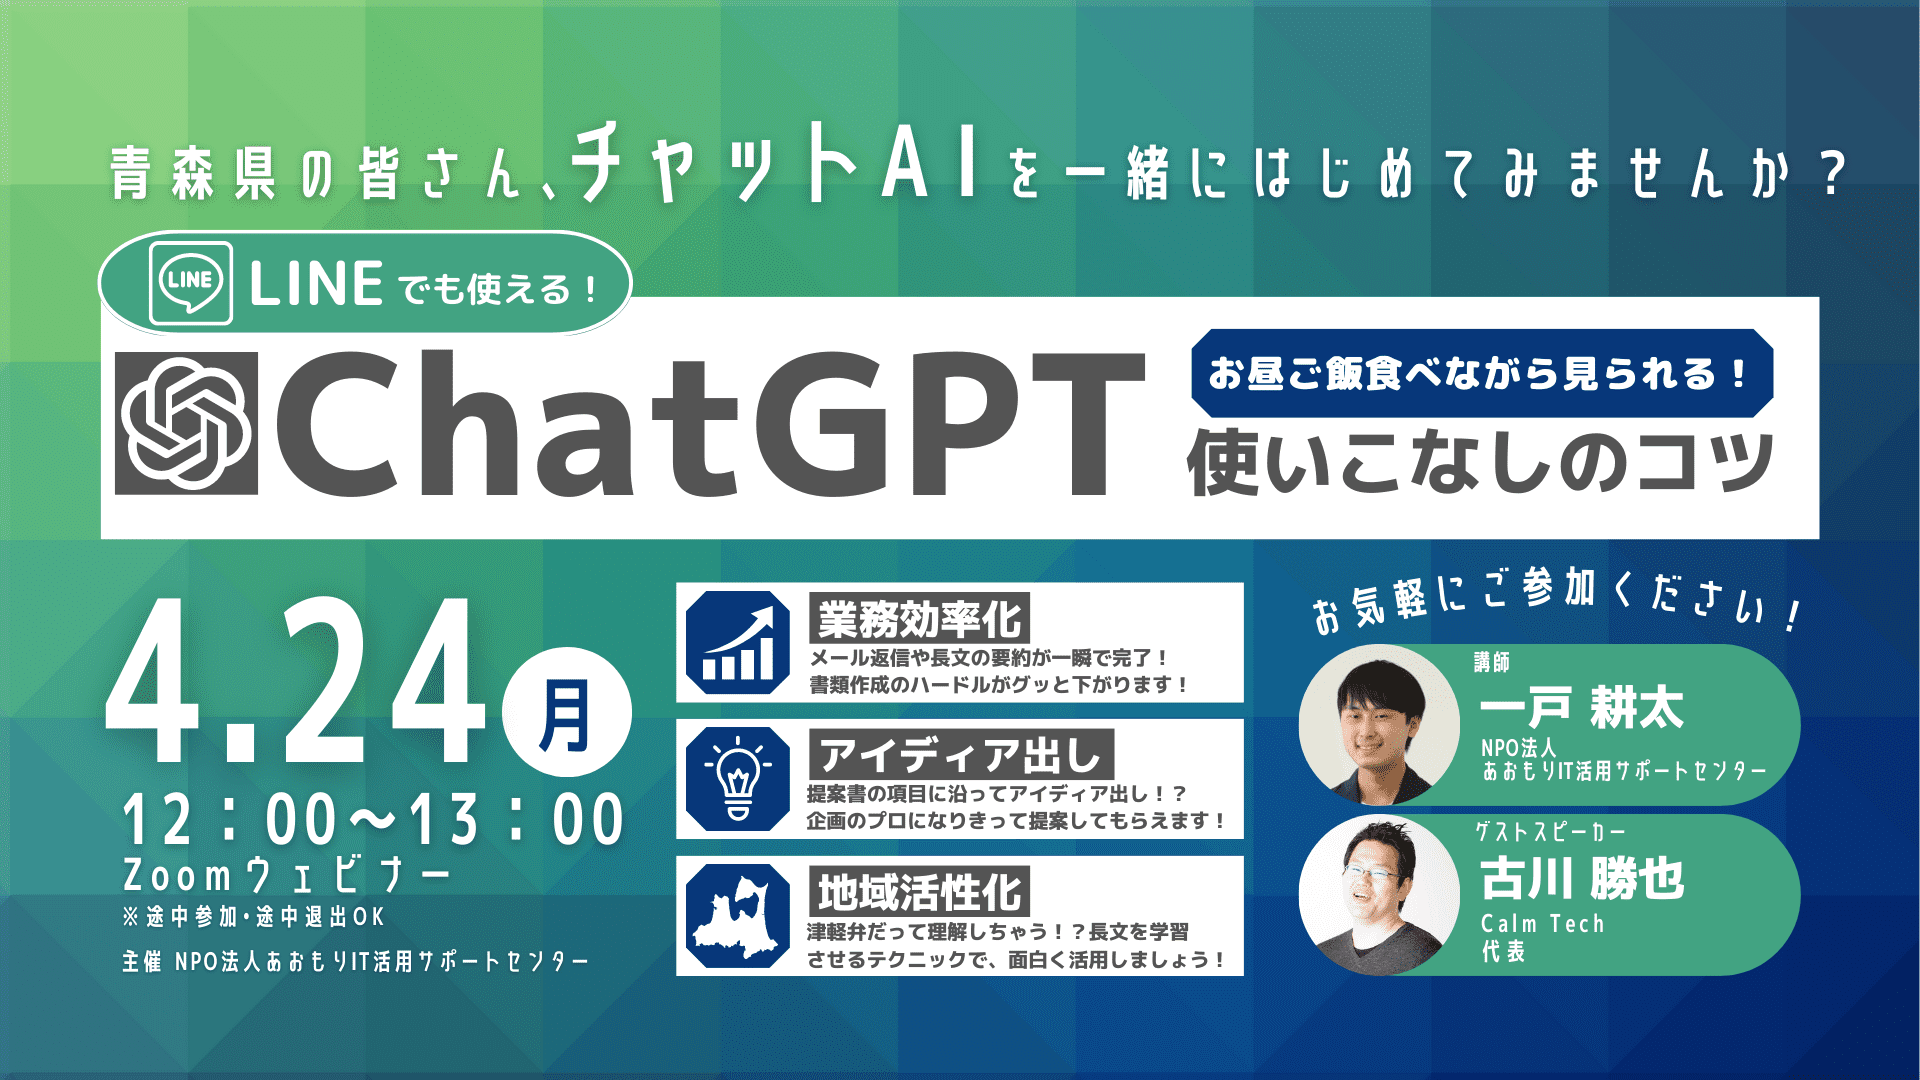 【参加無料】オンラインセミナー「ChatGPT使いこなしのコツ」を開催します！